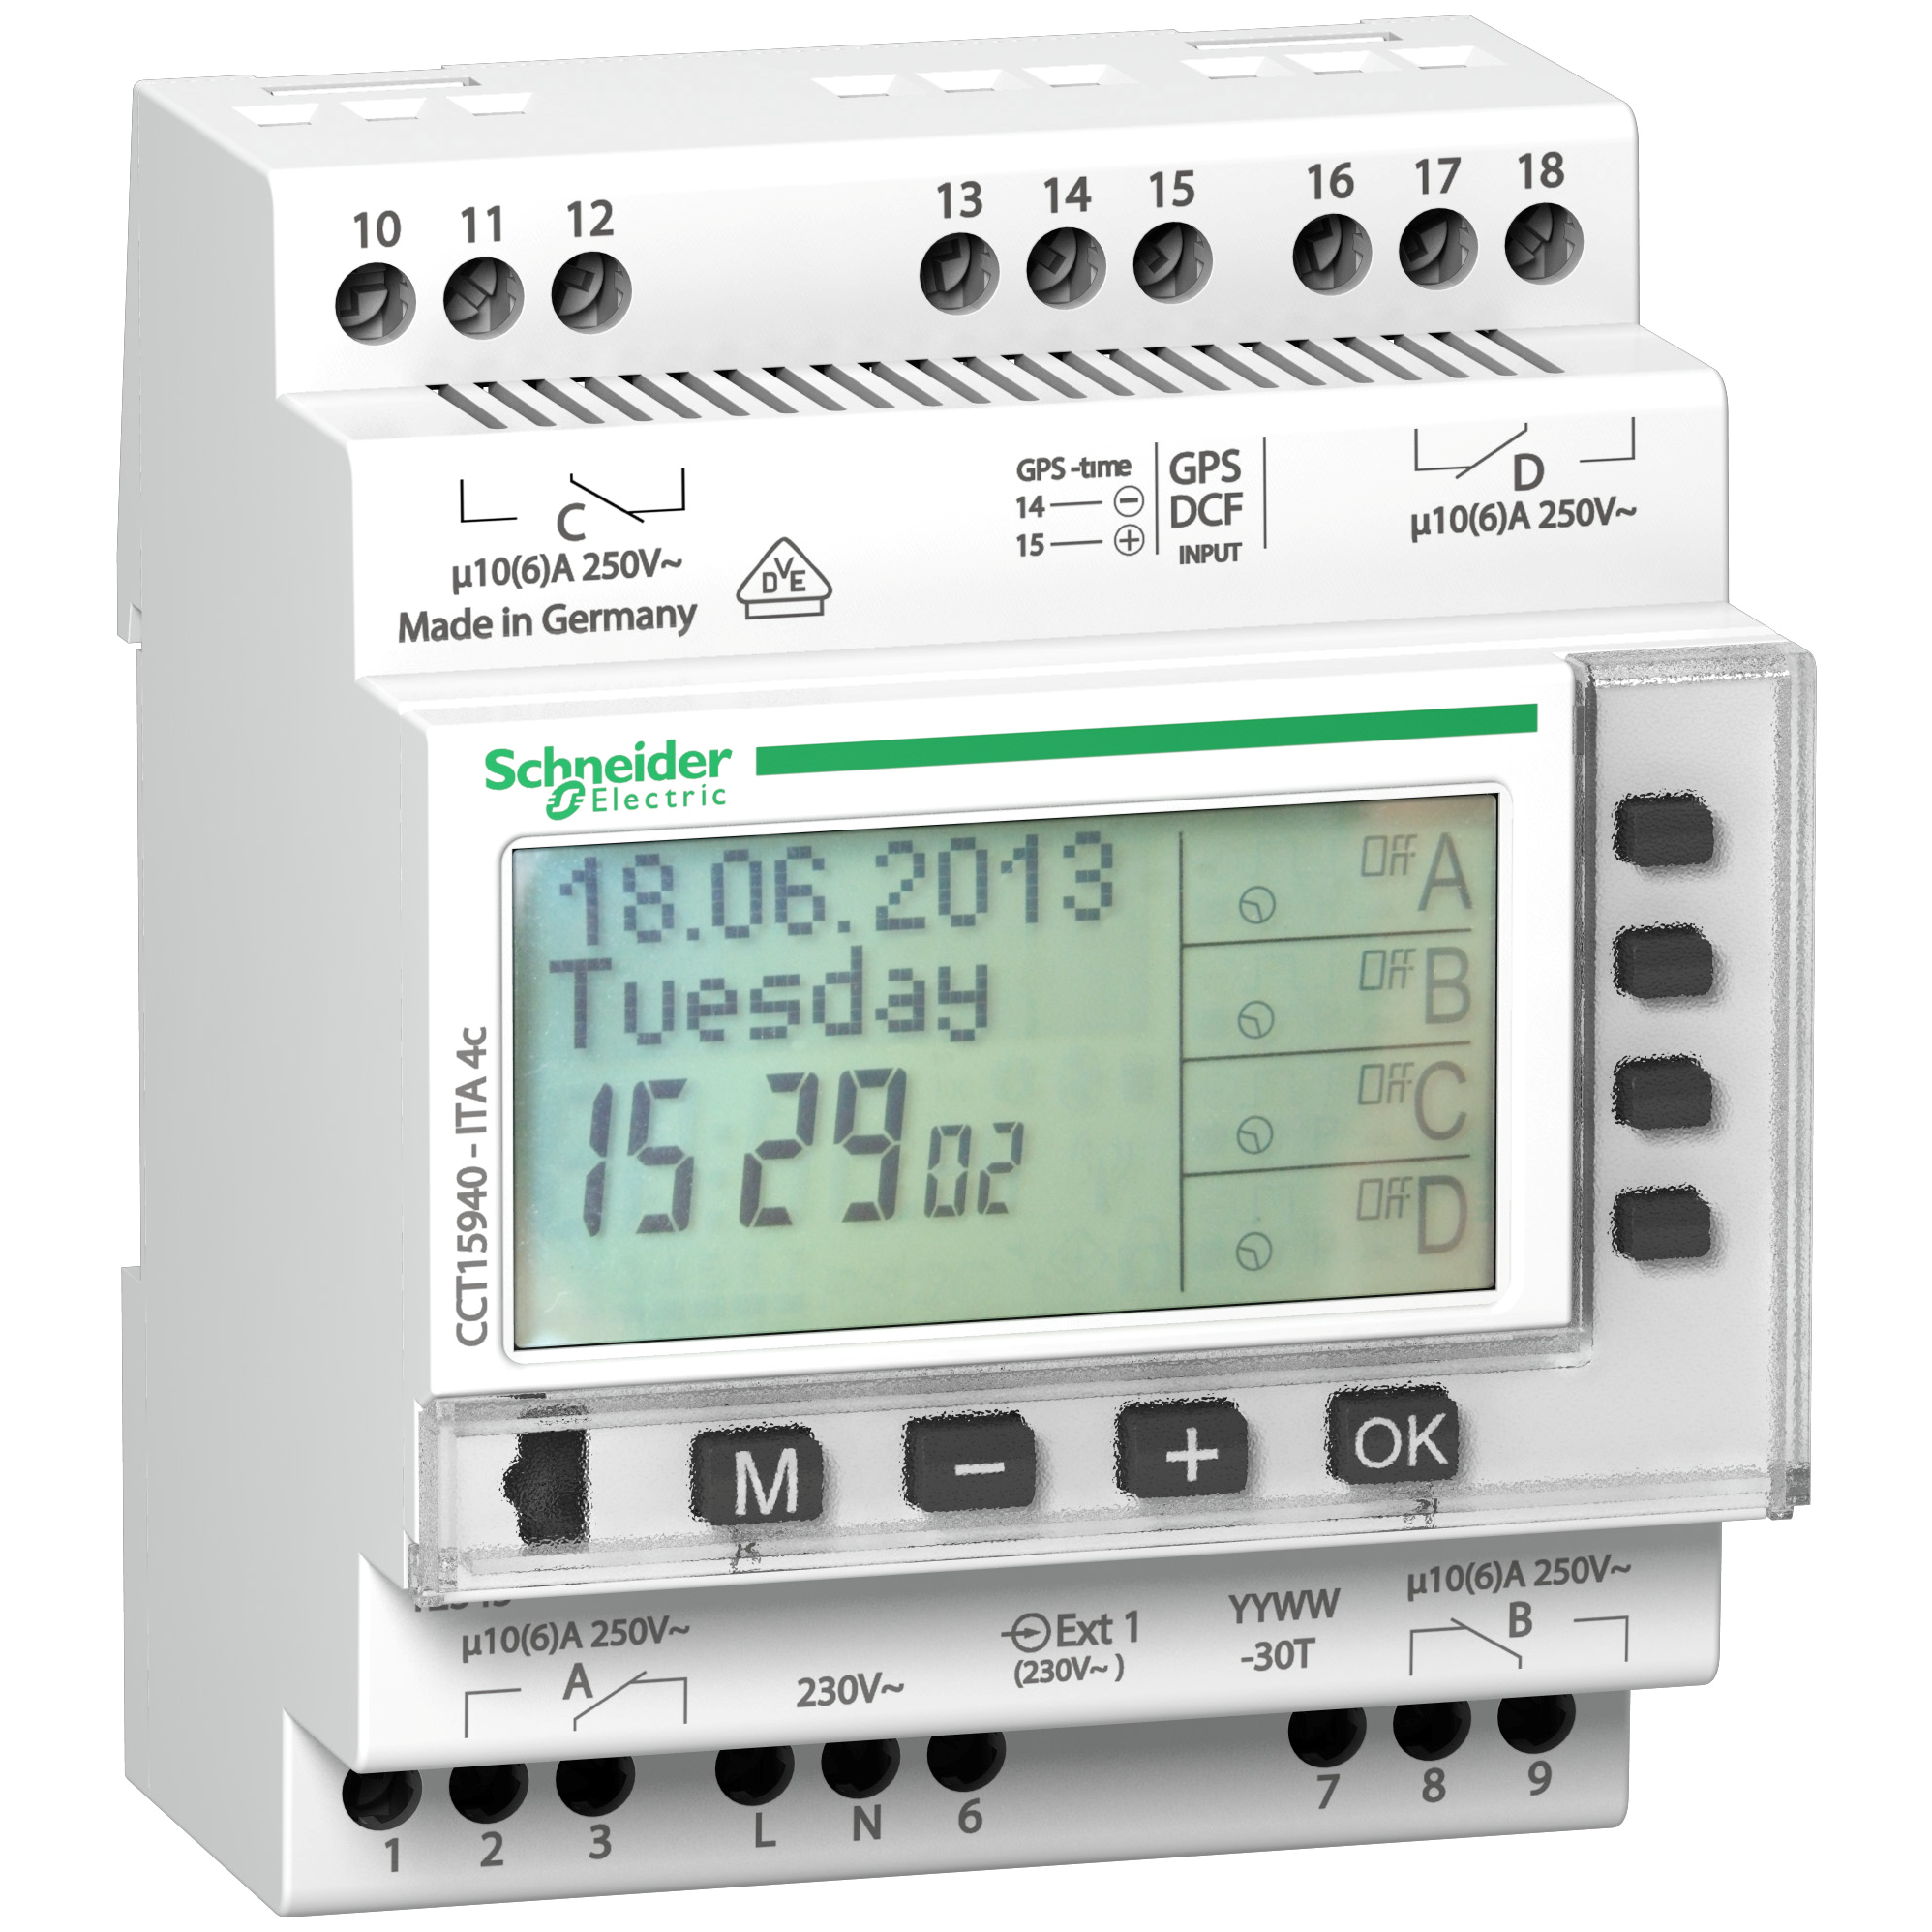 ITA: programbilni vremenski automat cetvorokanalni, 24h/7 dana/godina, 230 V AC, minimalni int. 1 min